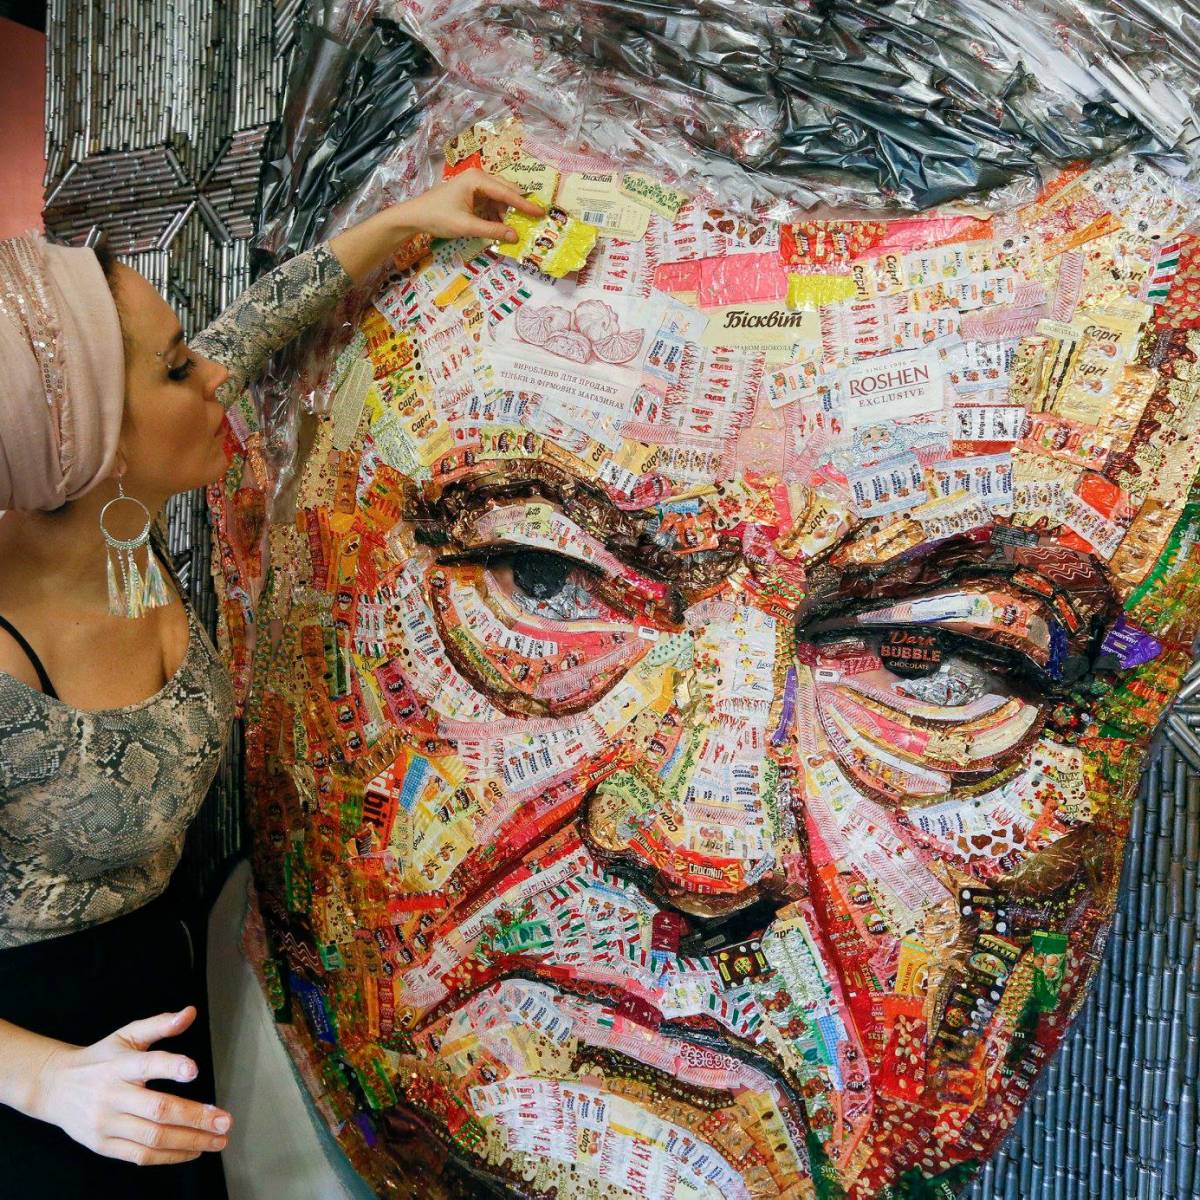 "Лицо коррупции": художница сделала портрет Порошенко из фантиков от конфет